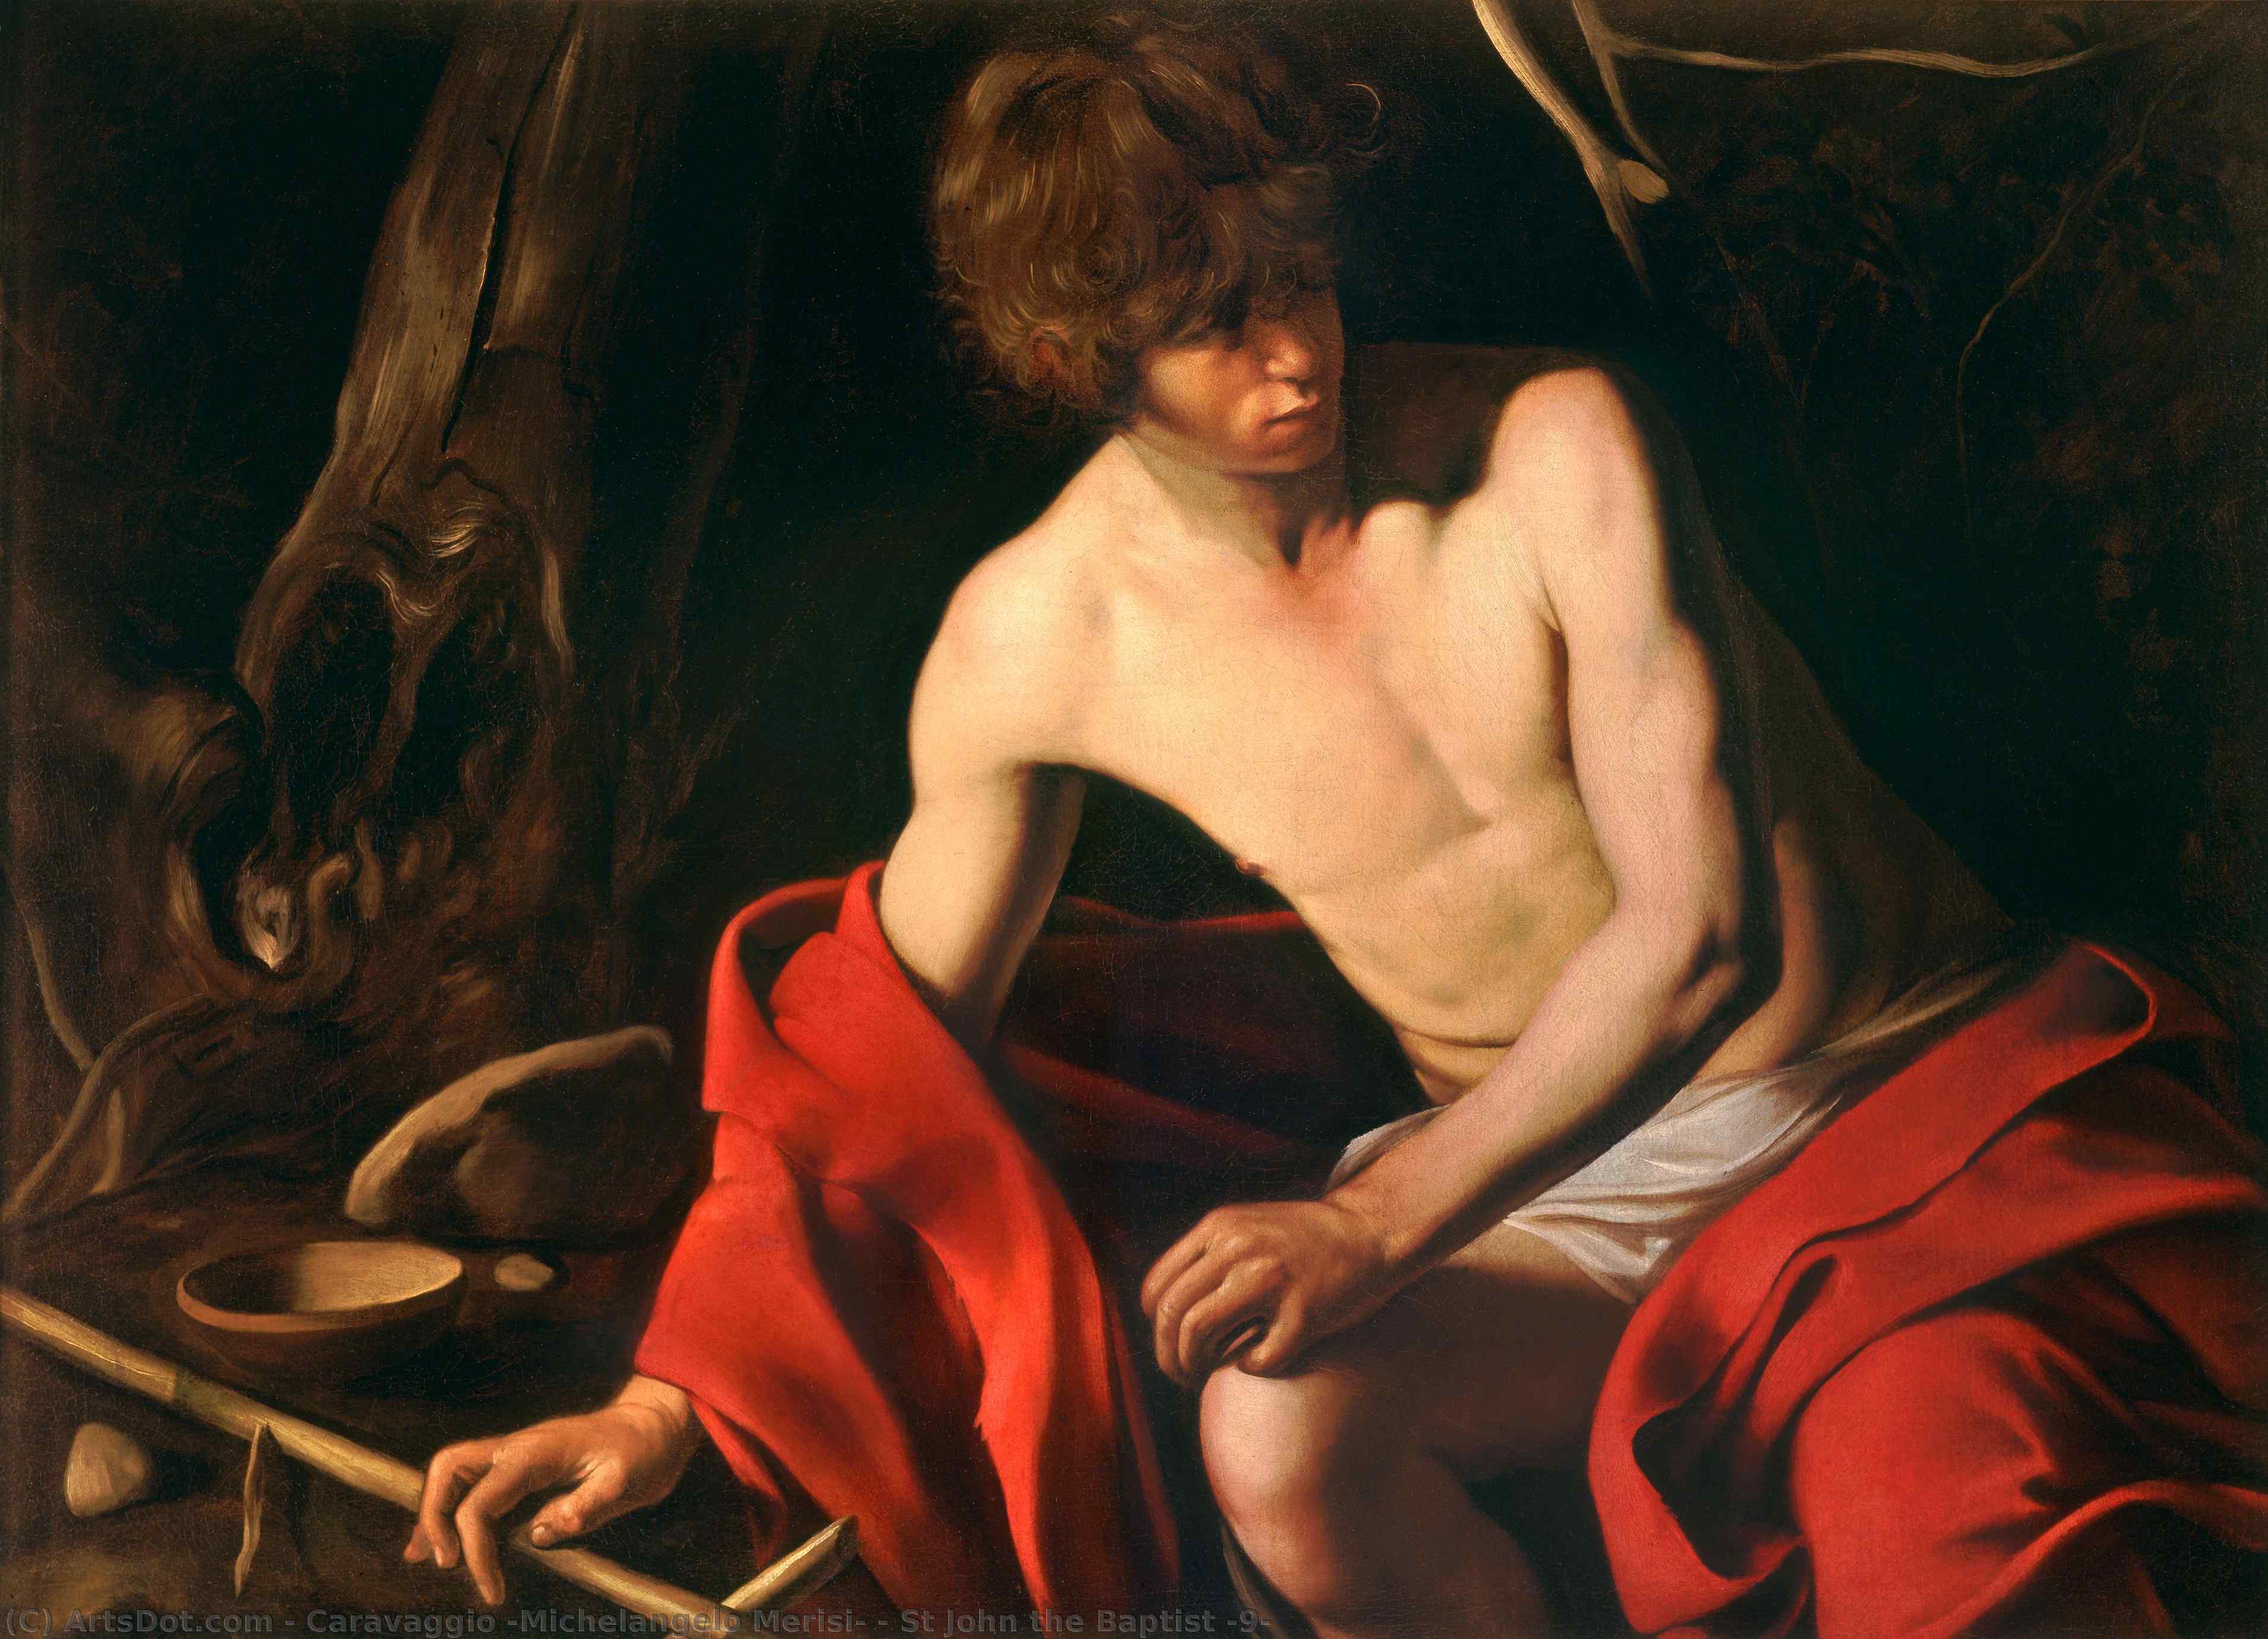 Achat Reproductions De Qualité Musée Saint Jean-Baptiste (9), 1603 de Caravaggio (Michelangelo Merisi) (1571-1610, Spain) | ArtsDot.com